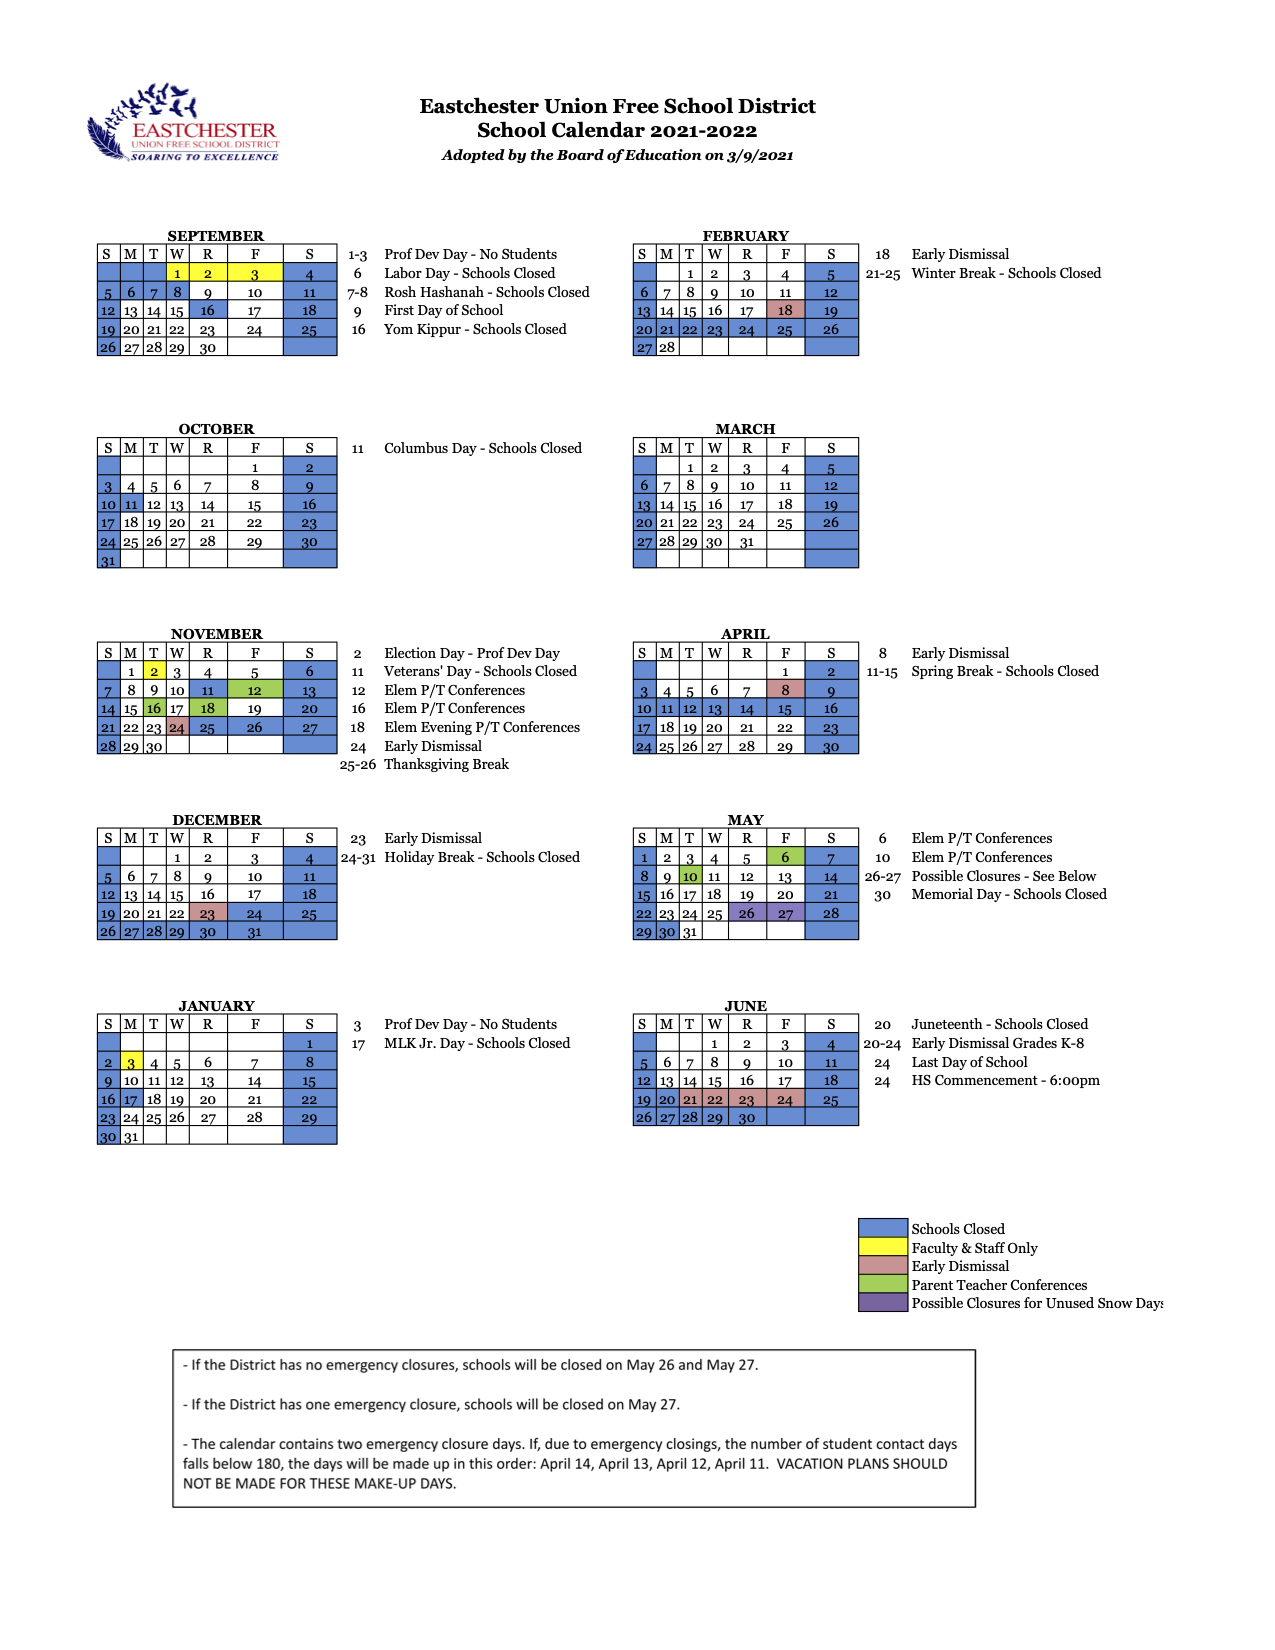 Eastchester Schools Calendar - Fred Kristal